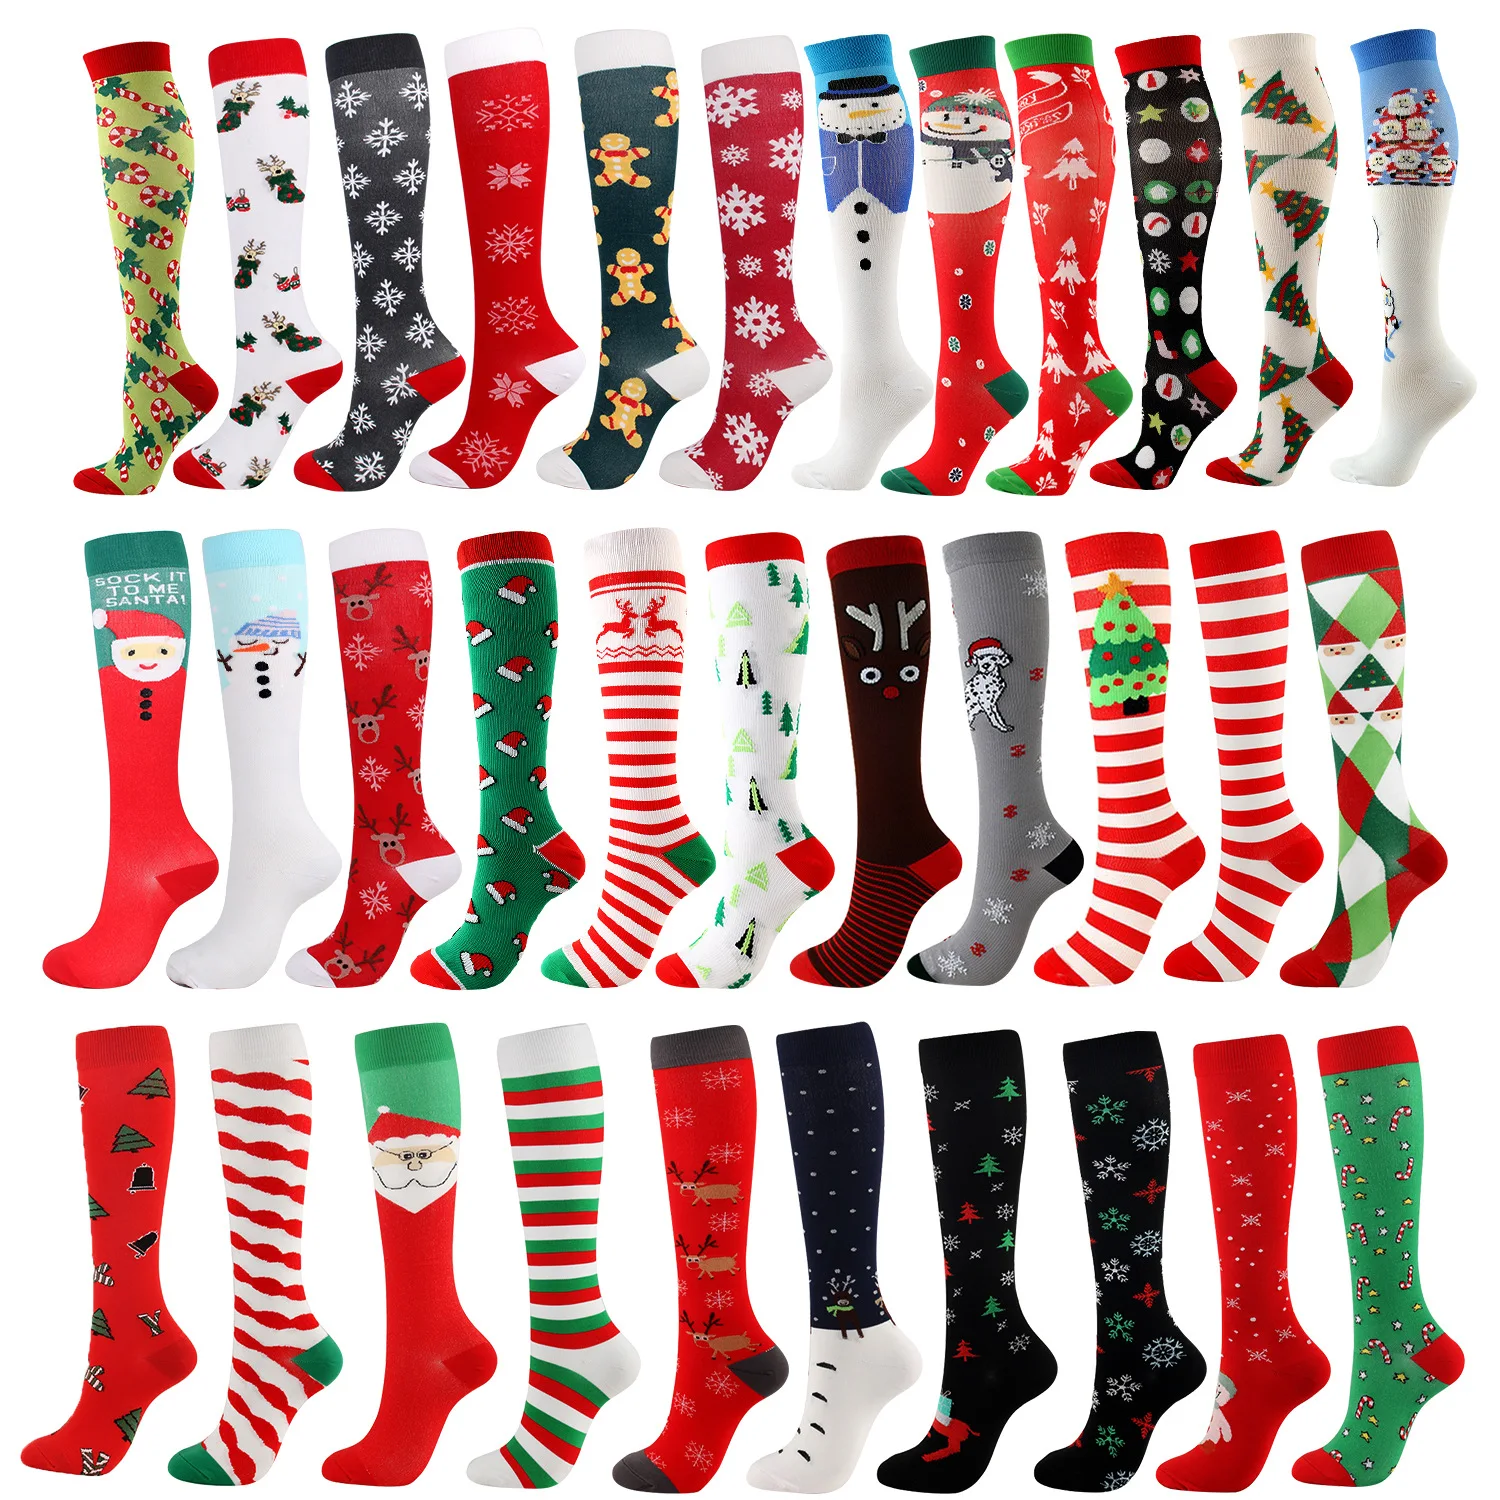 

Рождественские компрессионные высокие чулки для женщин и мужчин, Рождественская серия, нейлоновые носки до колена с рисунком снеговика, ло...